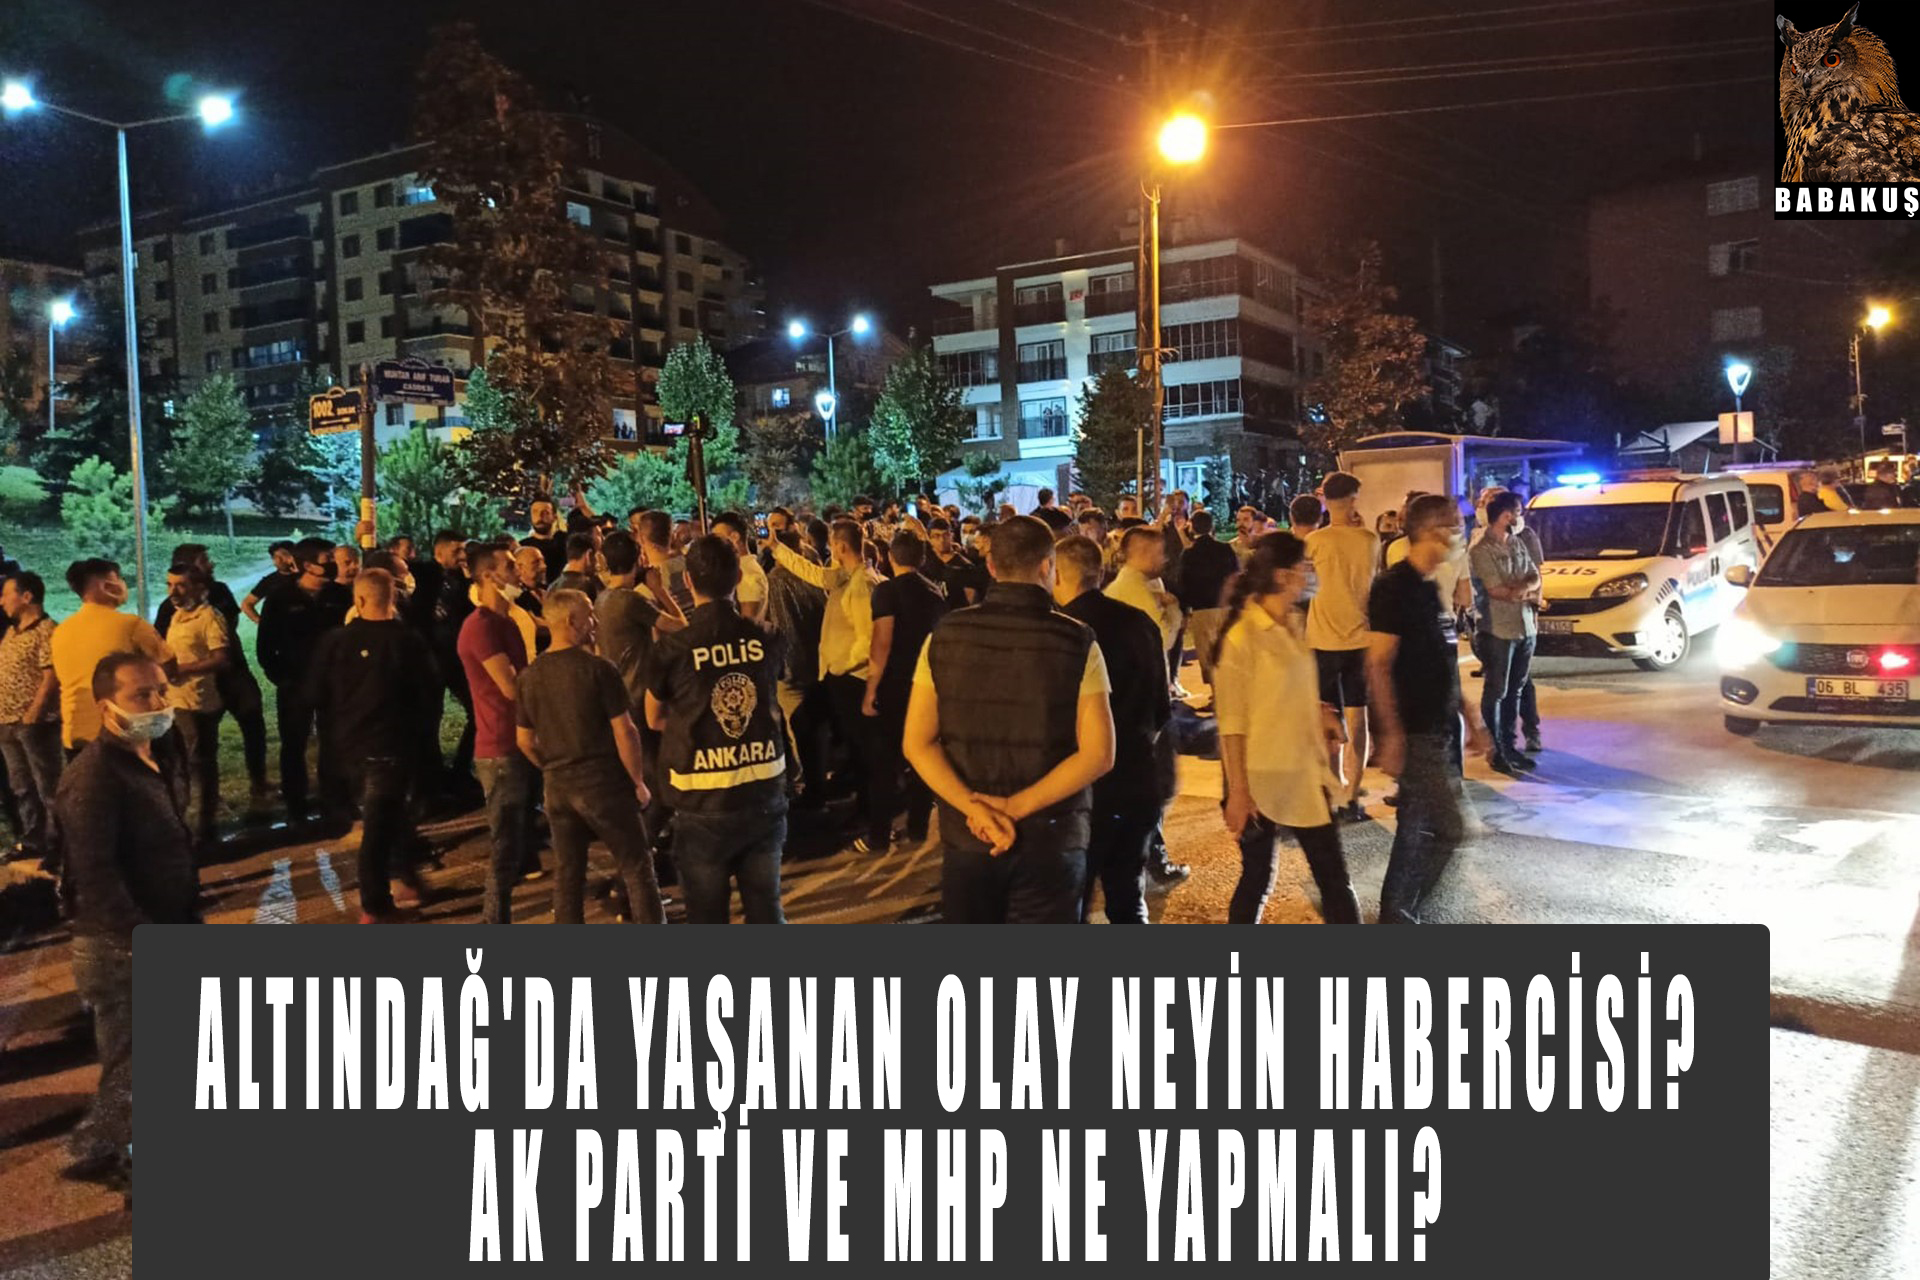 Altındağ’da yaşanan olay neyin habercisi? Ak parti ve MHP ne yapmalı?